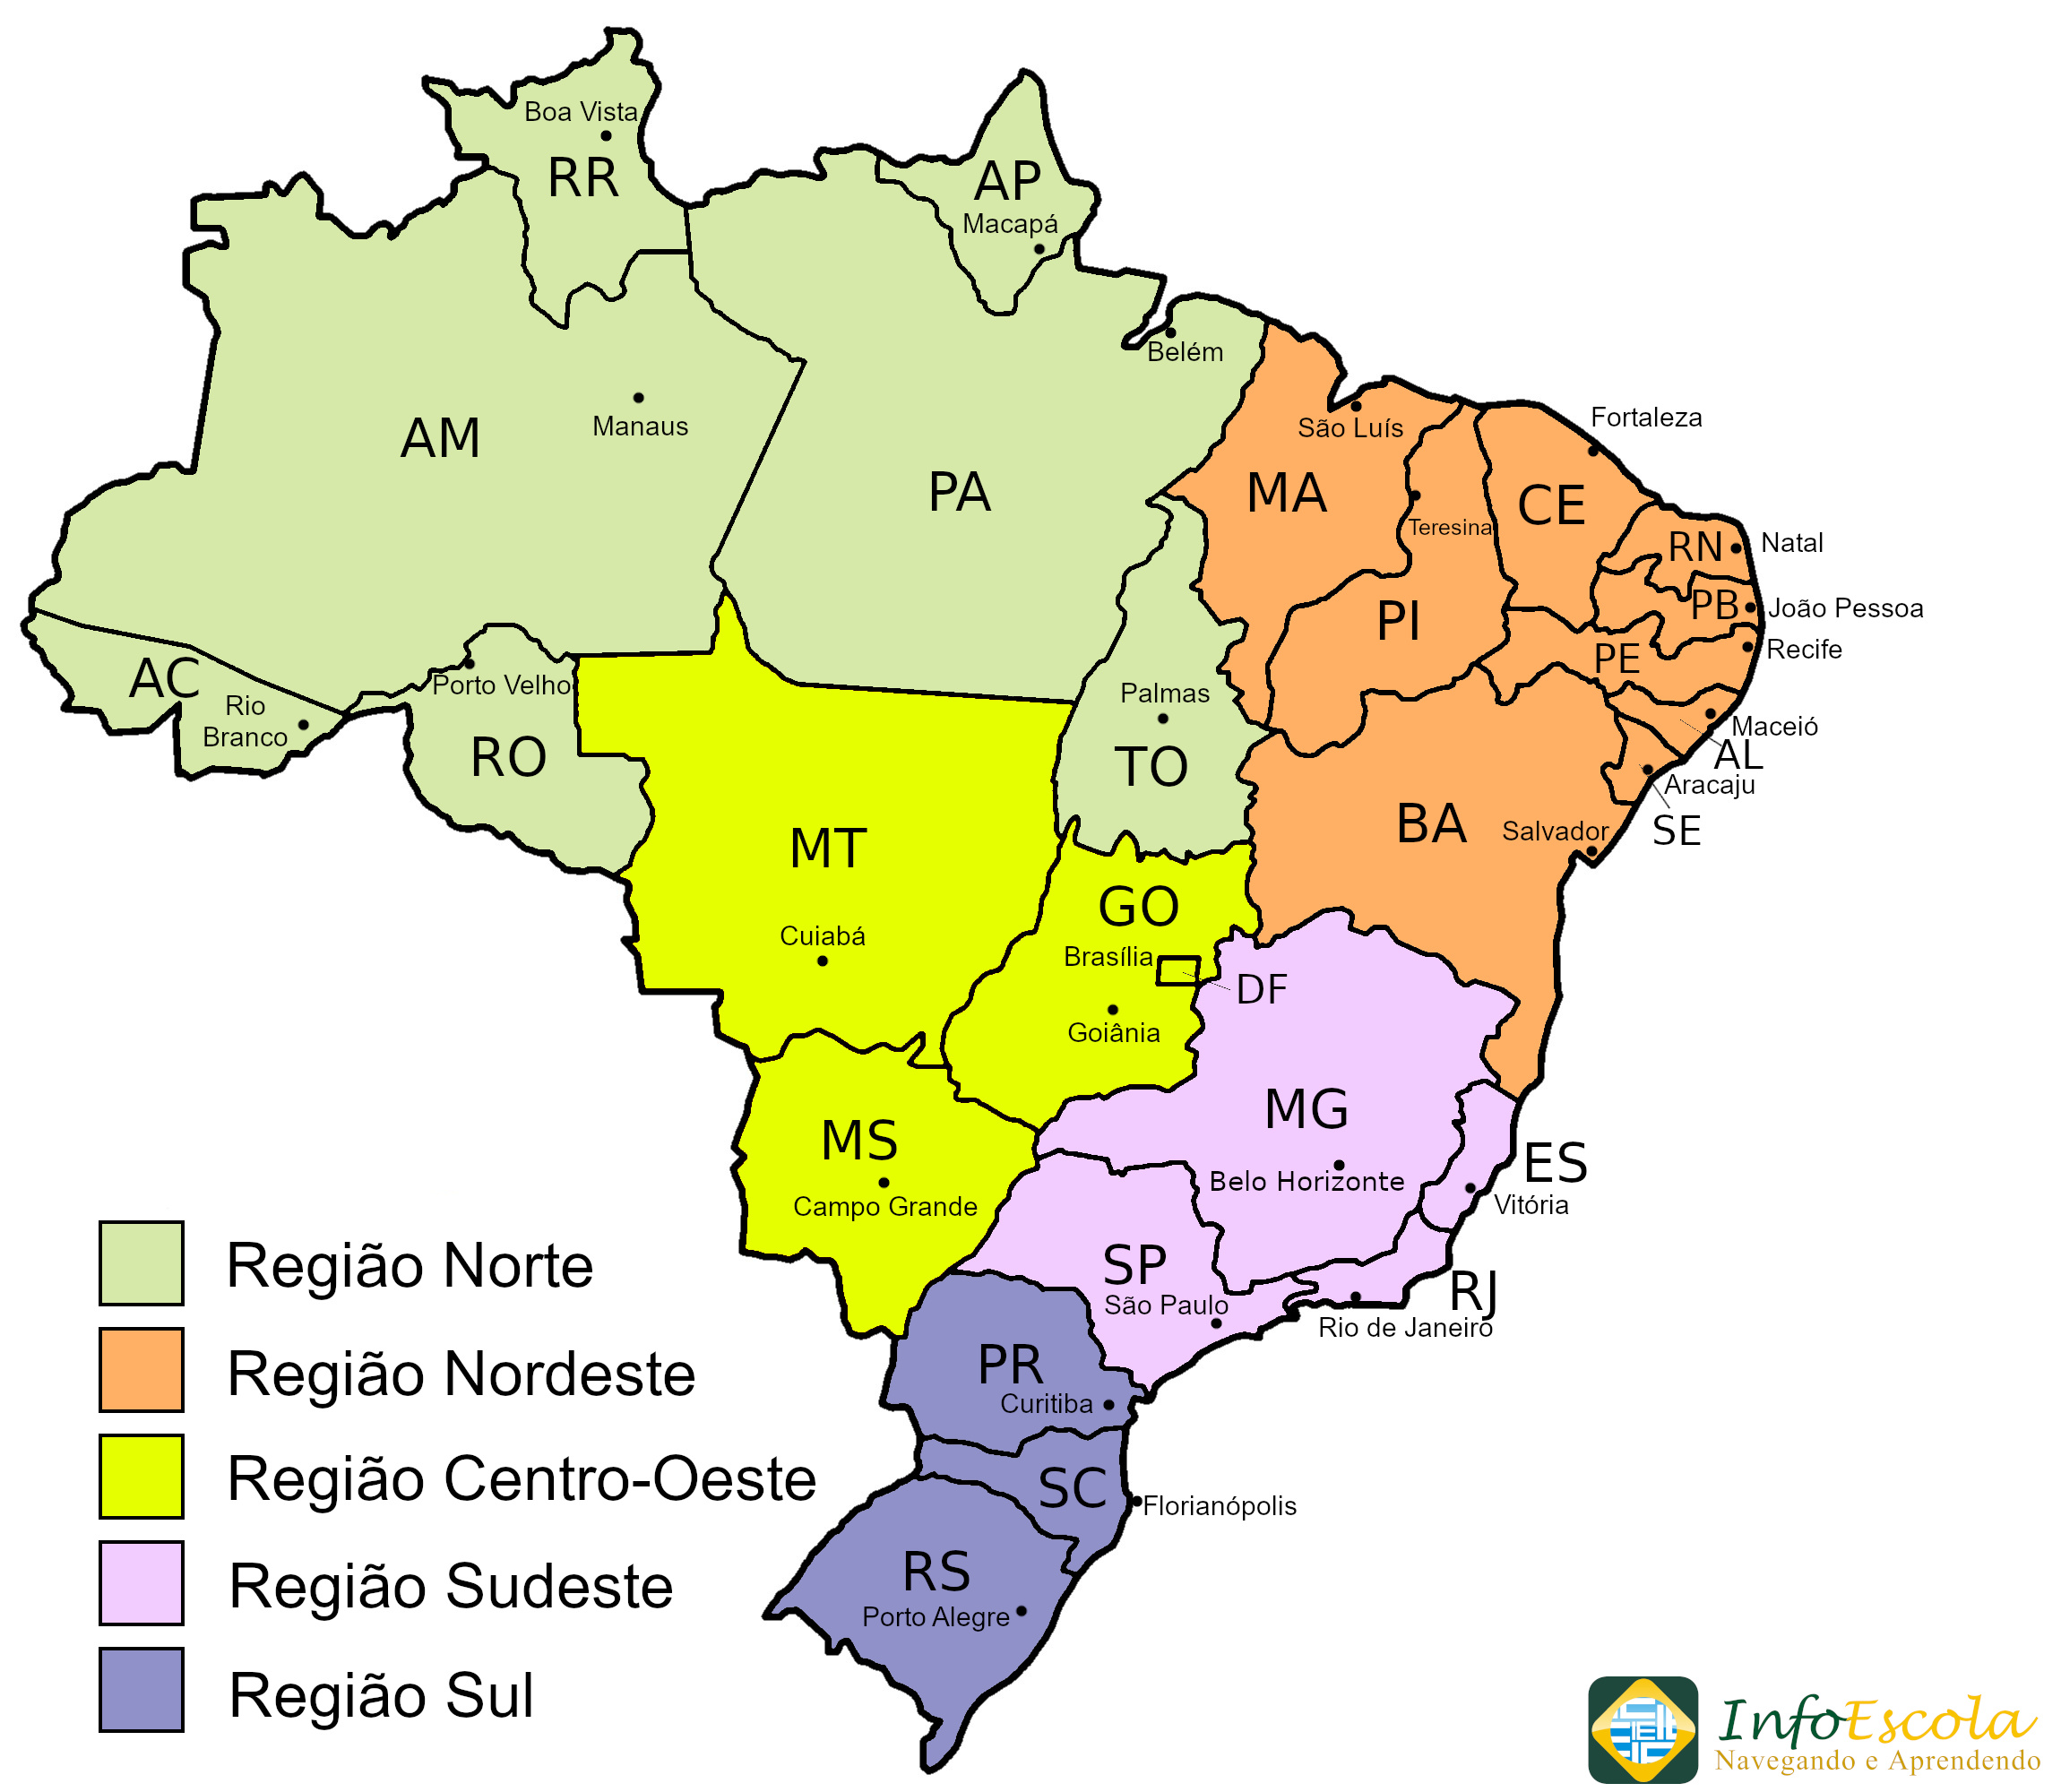 Brasil: Divisão Regional do IBGE - Disciplina - Geografia